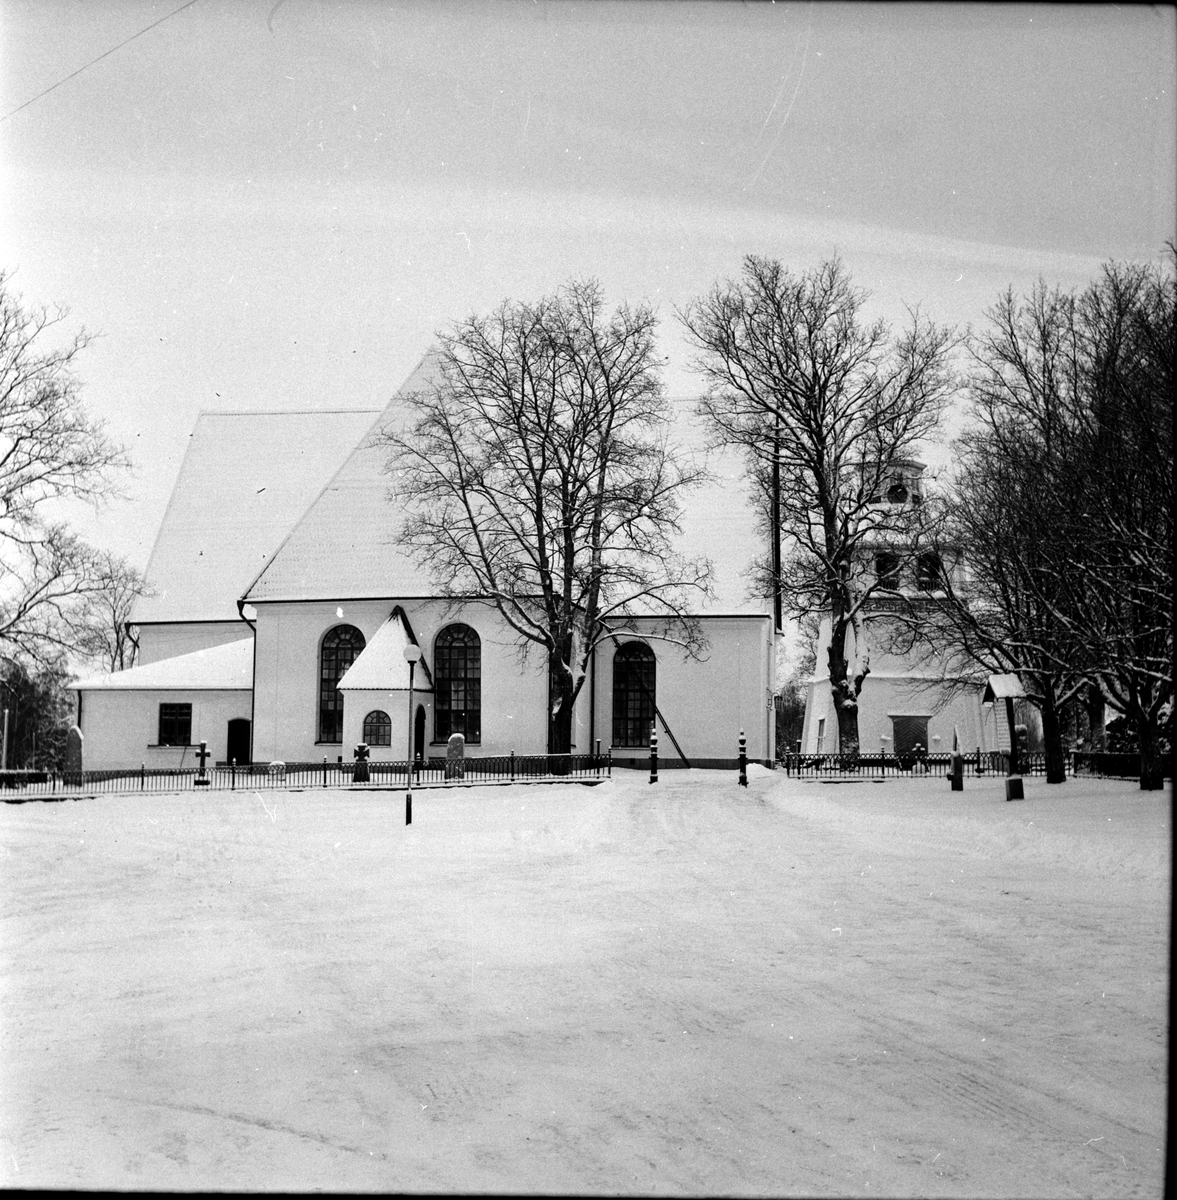 Arbrå,
Kyrkan,
Vinterbild,
22 December 1967